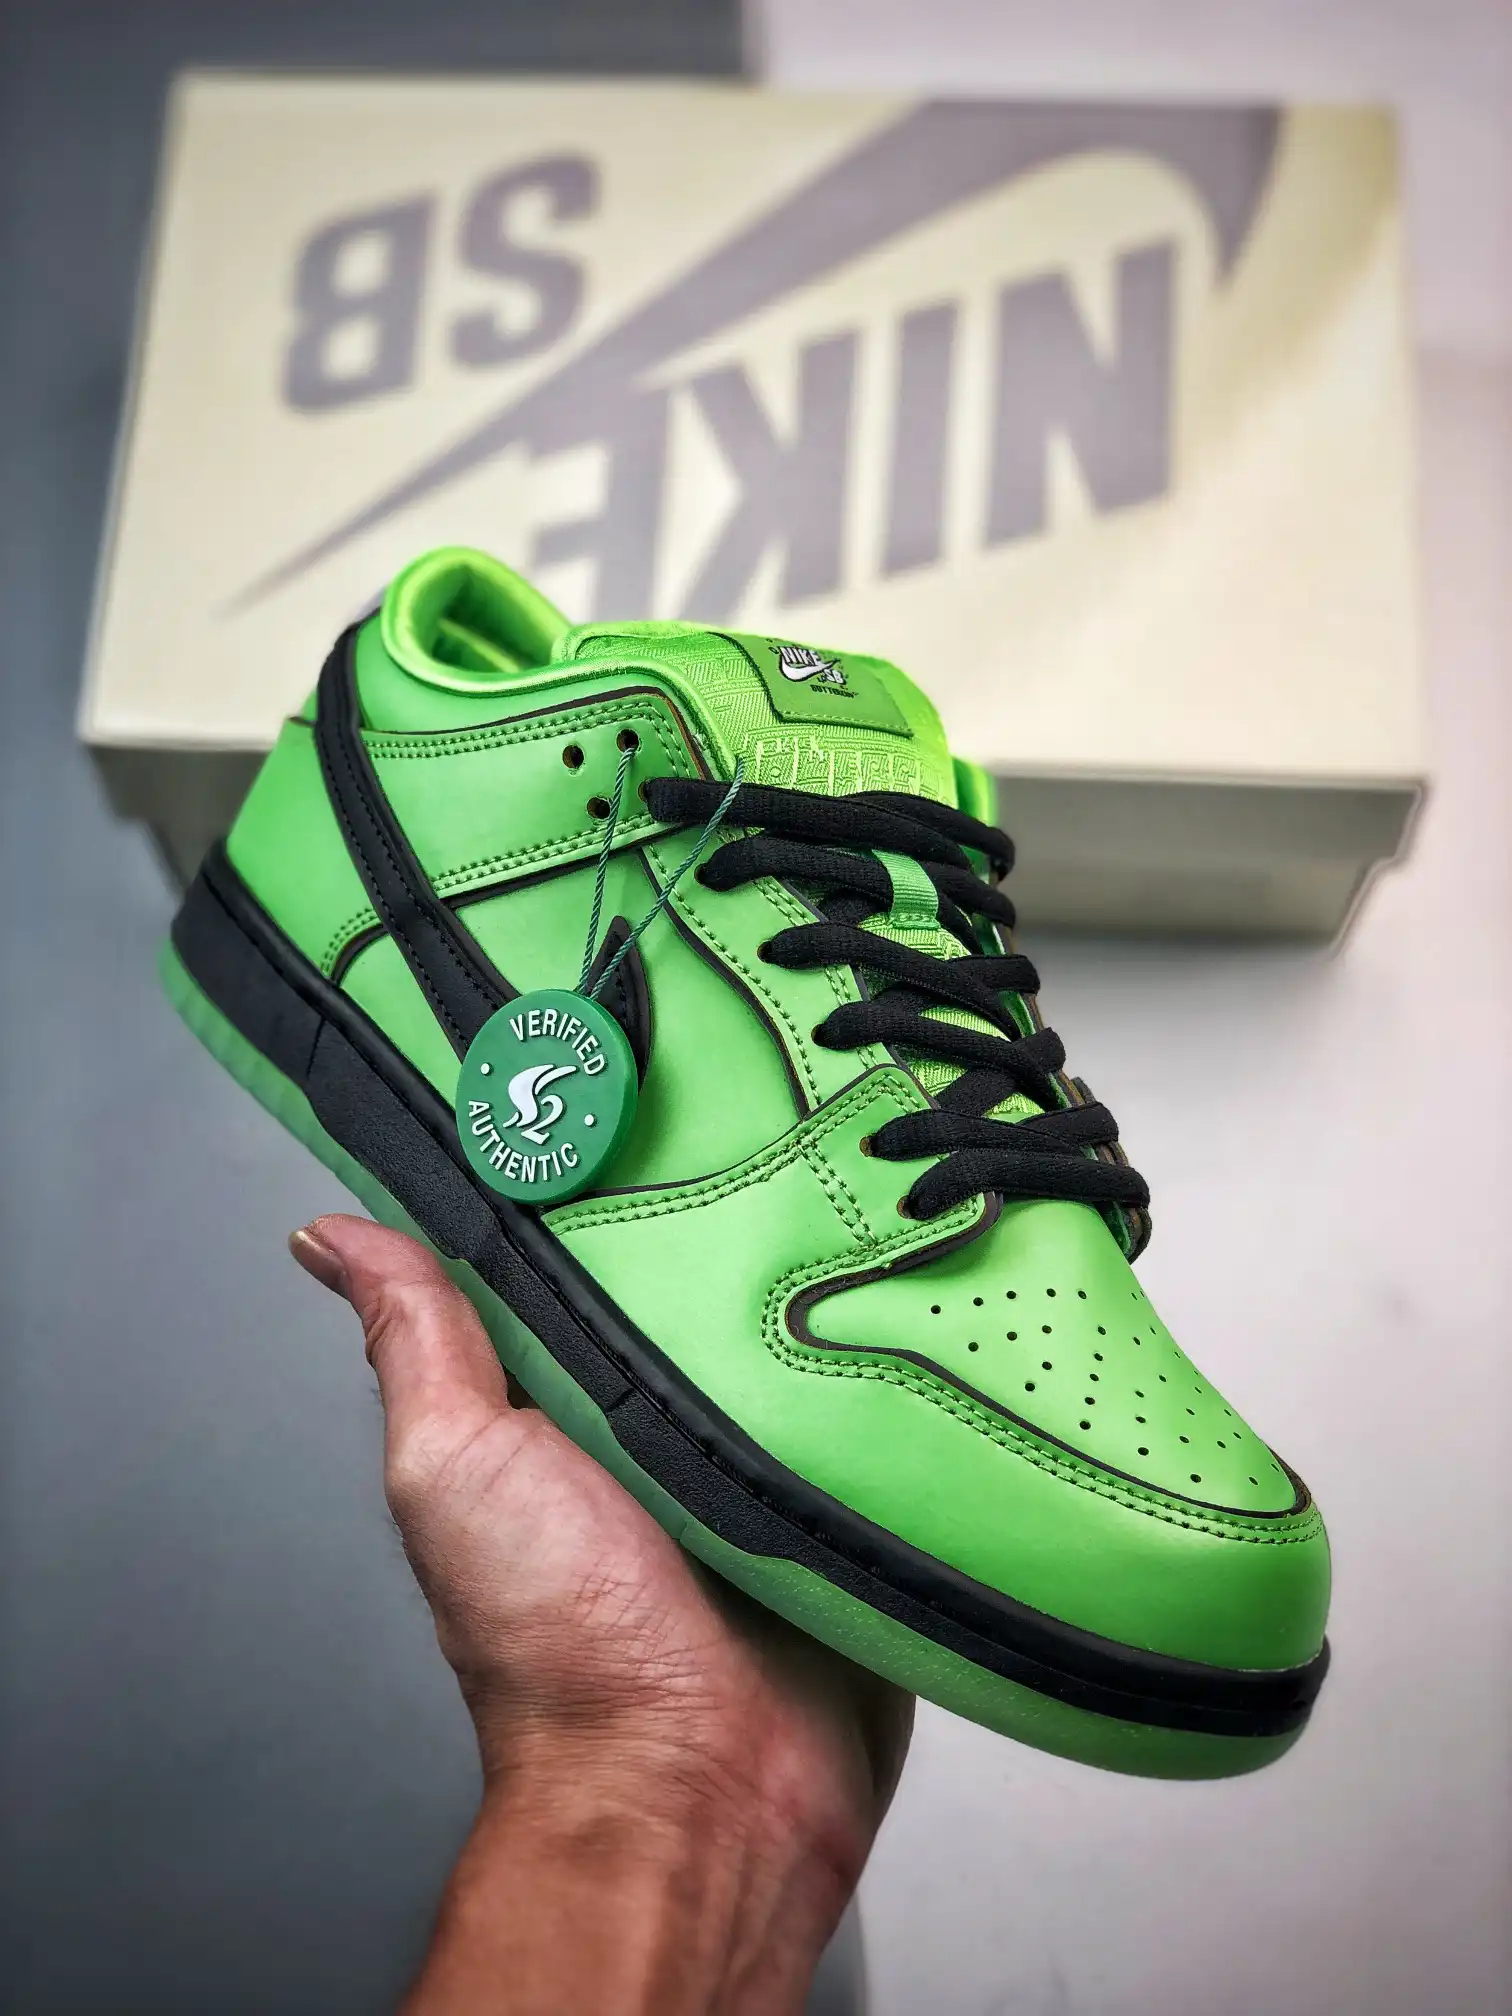 The Powerpuff Girls x Nike SB Dunk Low "Buttercup" Green FZ8319-300 Shoes